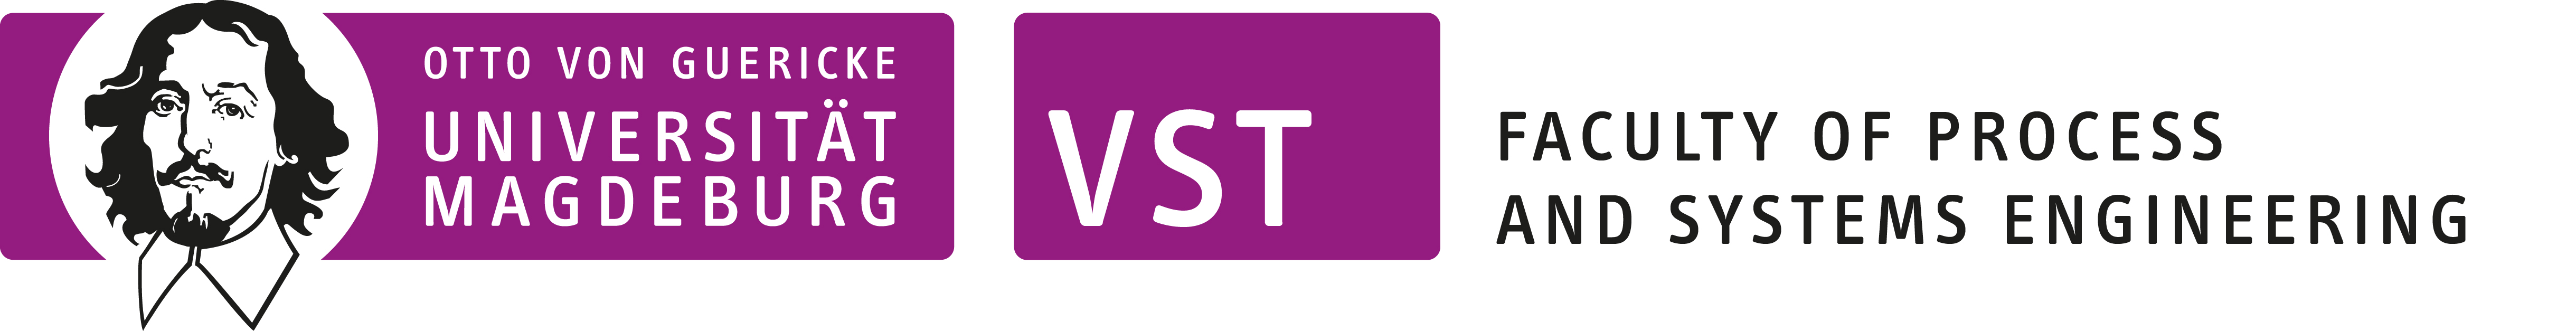 FVST-Logo